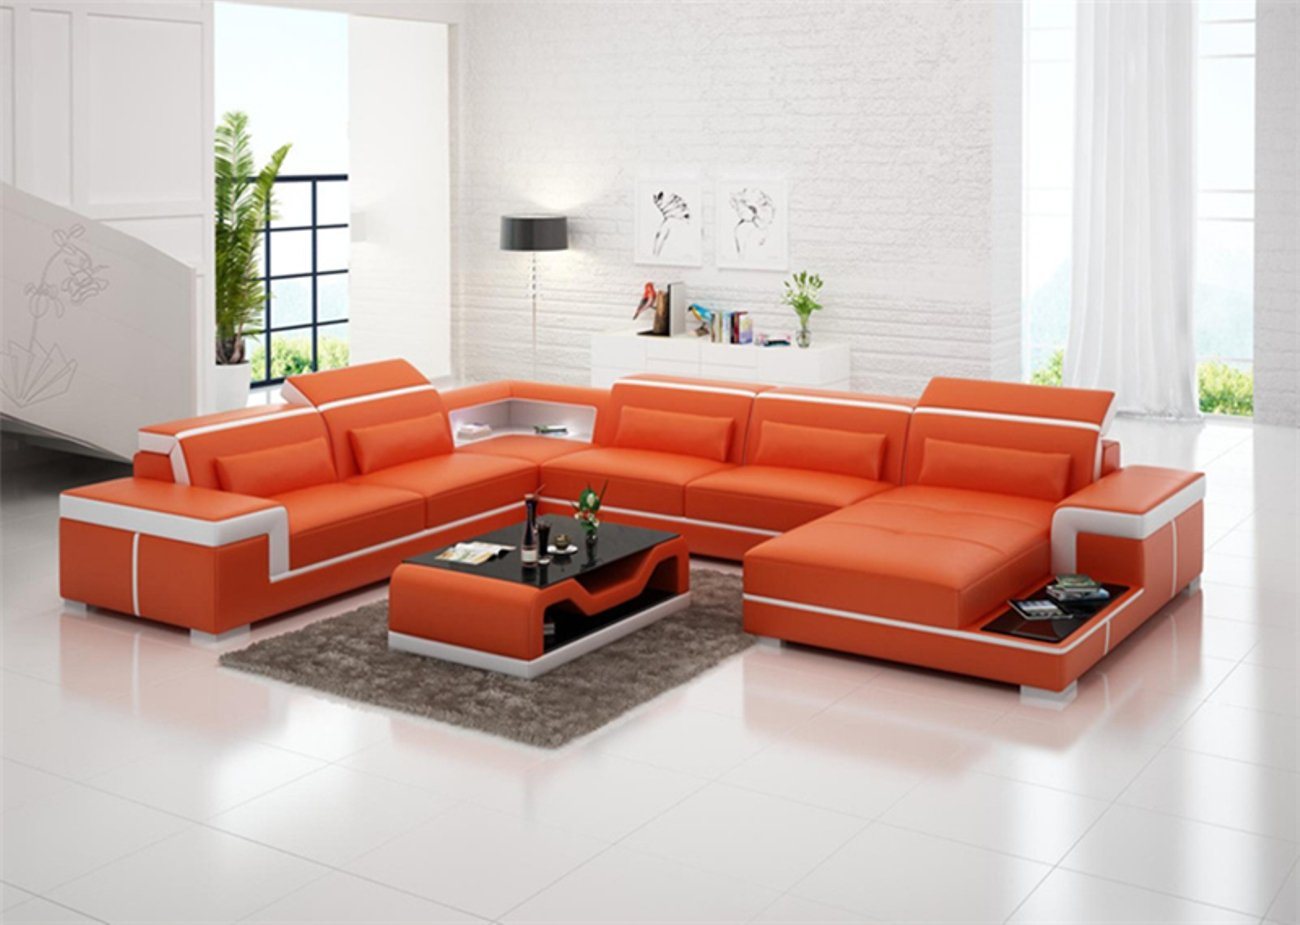 JVmoebel Ecksofa Sofas U Form Sofa Couch Polster Garnitur Wohnlandschaft Design, Made in Europe von JVmoebel